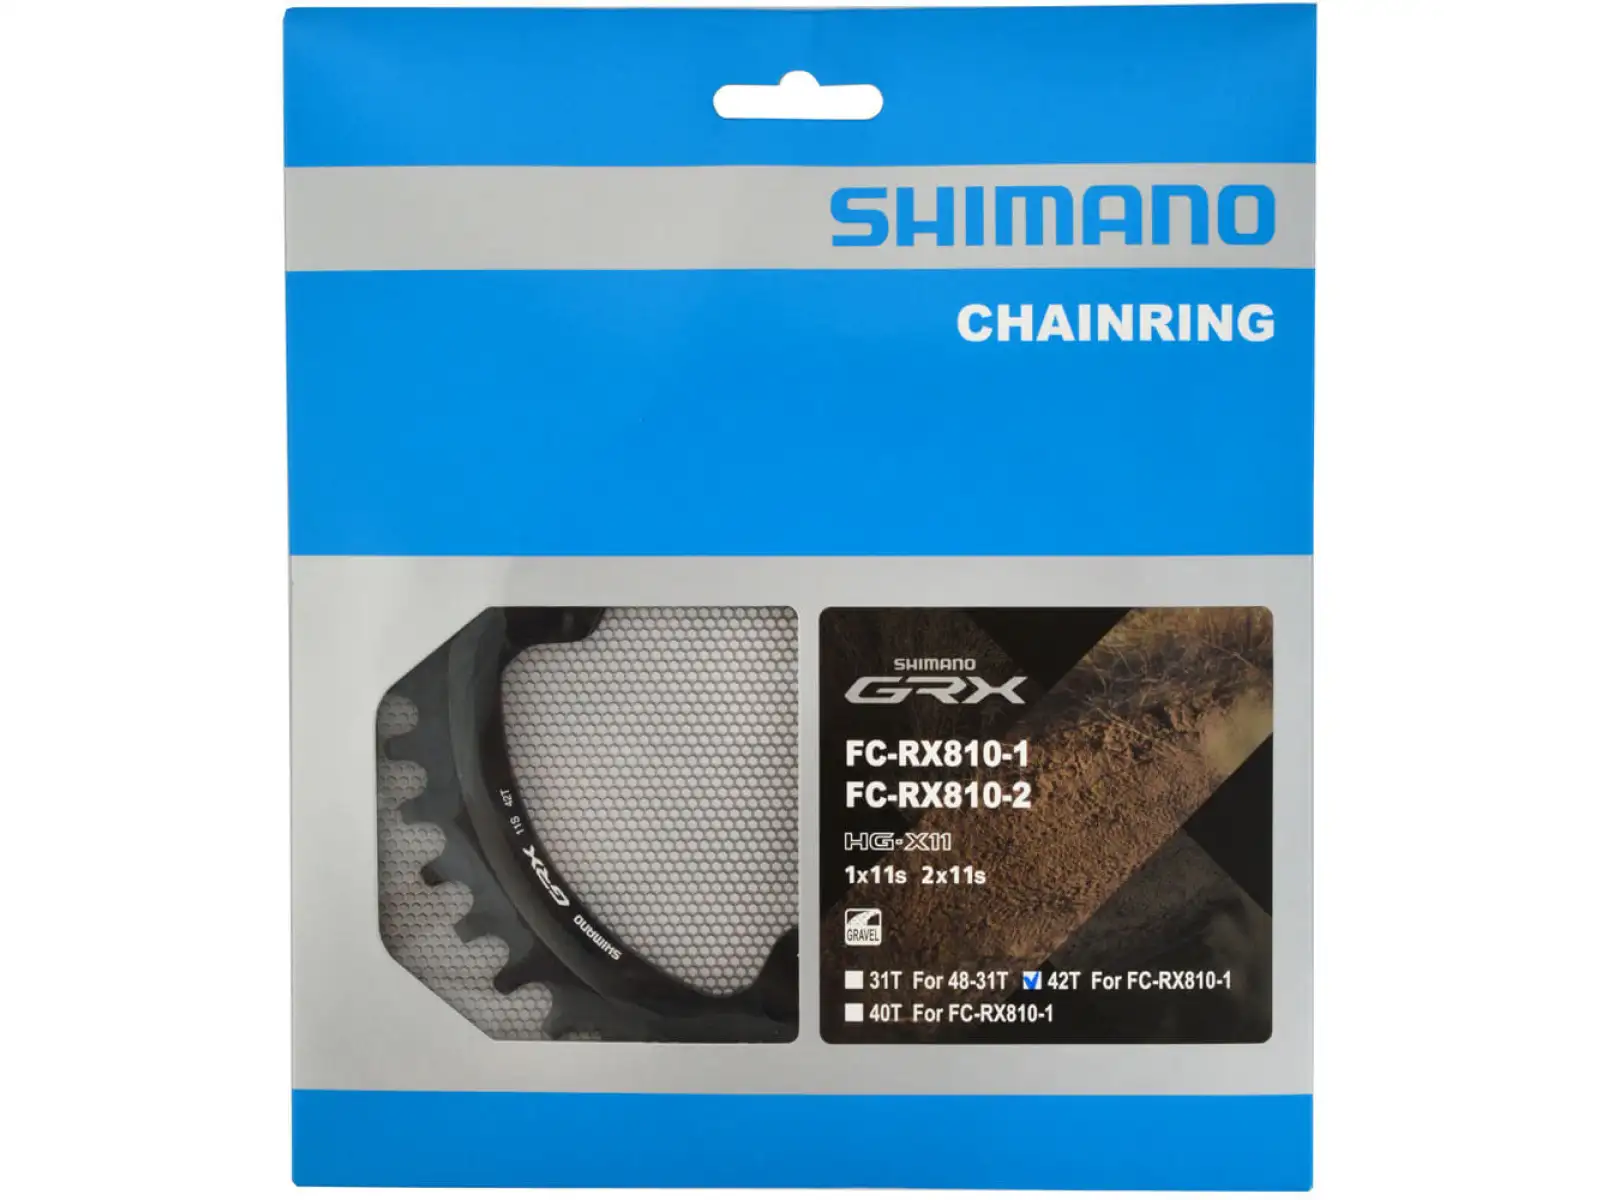 Shimano GRX FC-RX810 převodník 1x11 42z.